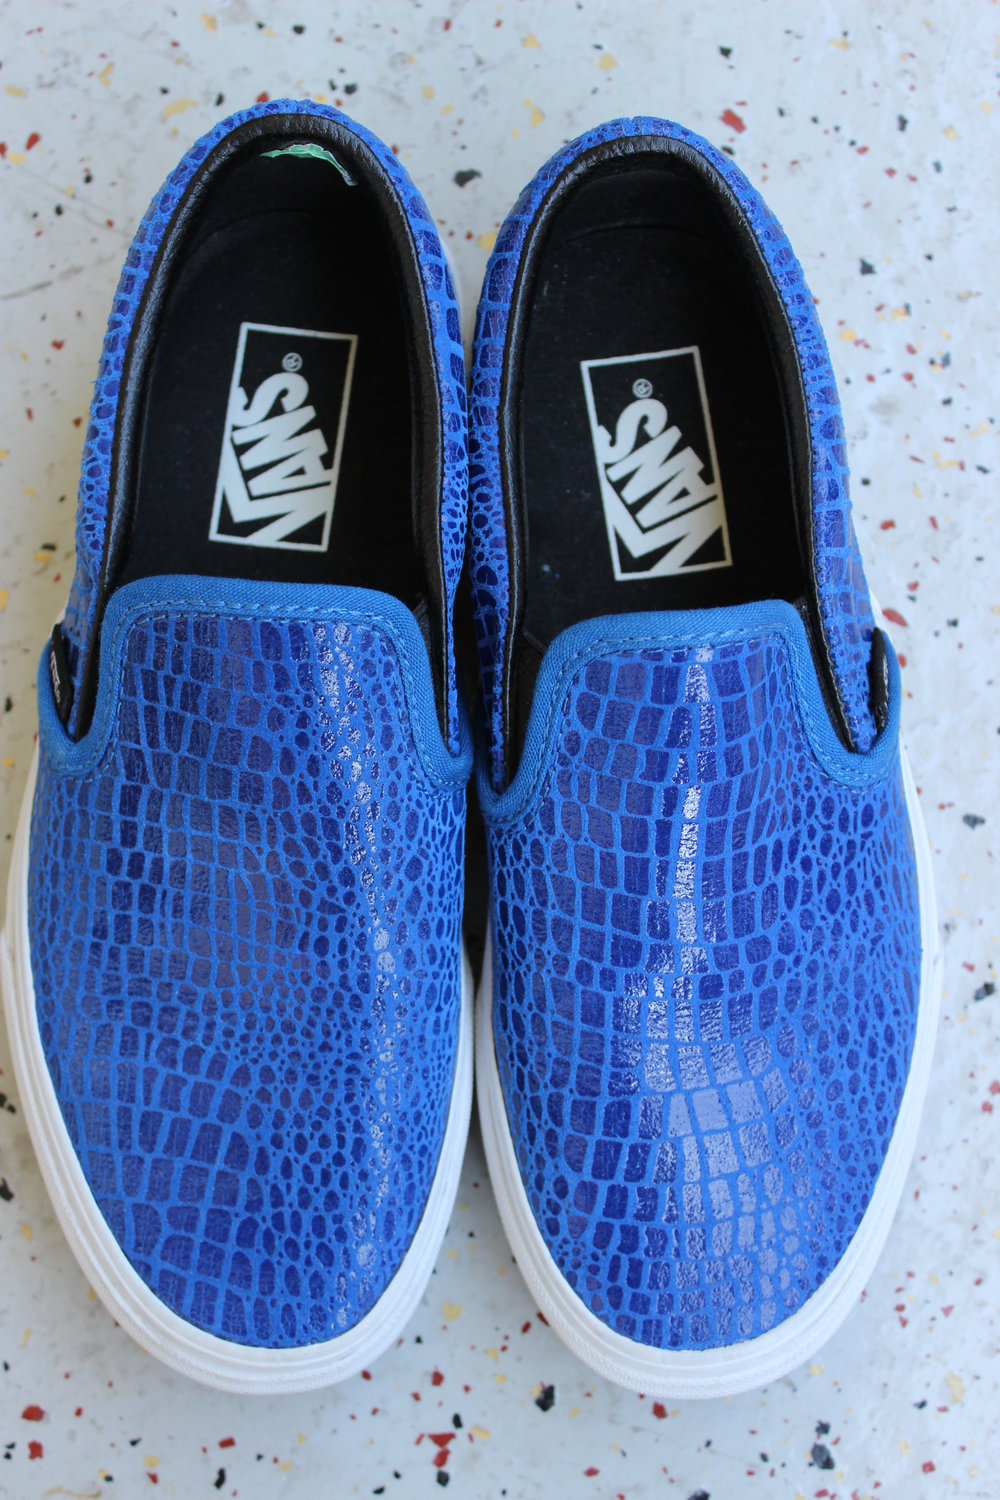 NEU! VANS Slip-On Sneaker Slipper low, classic blue